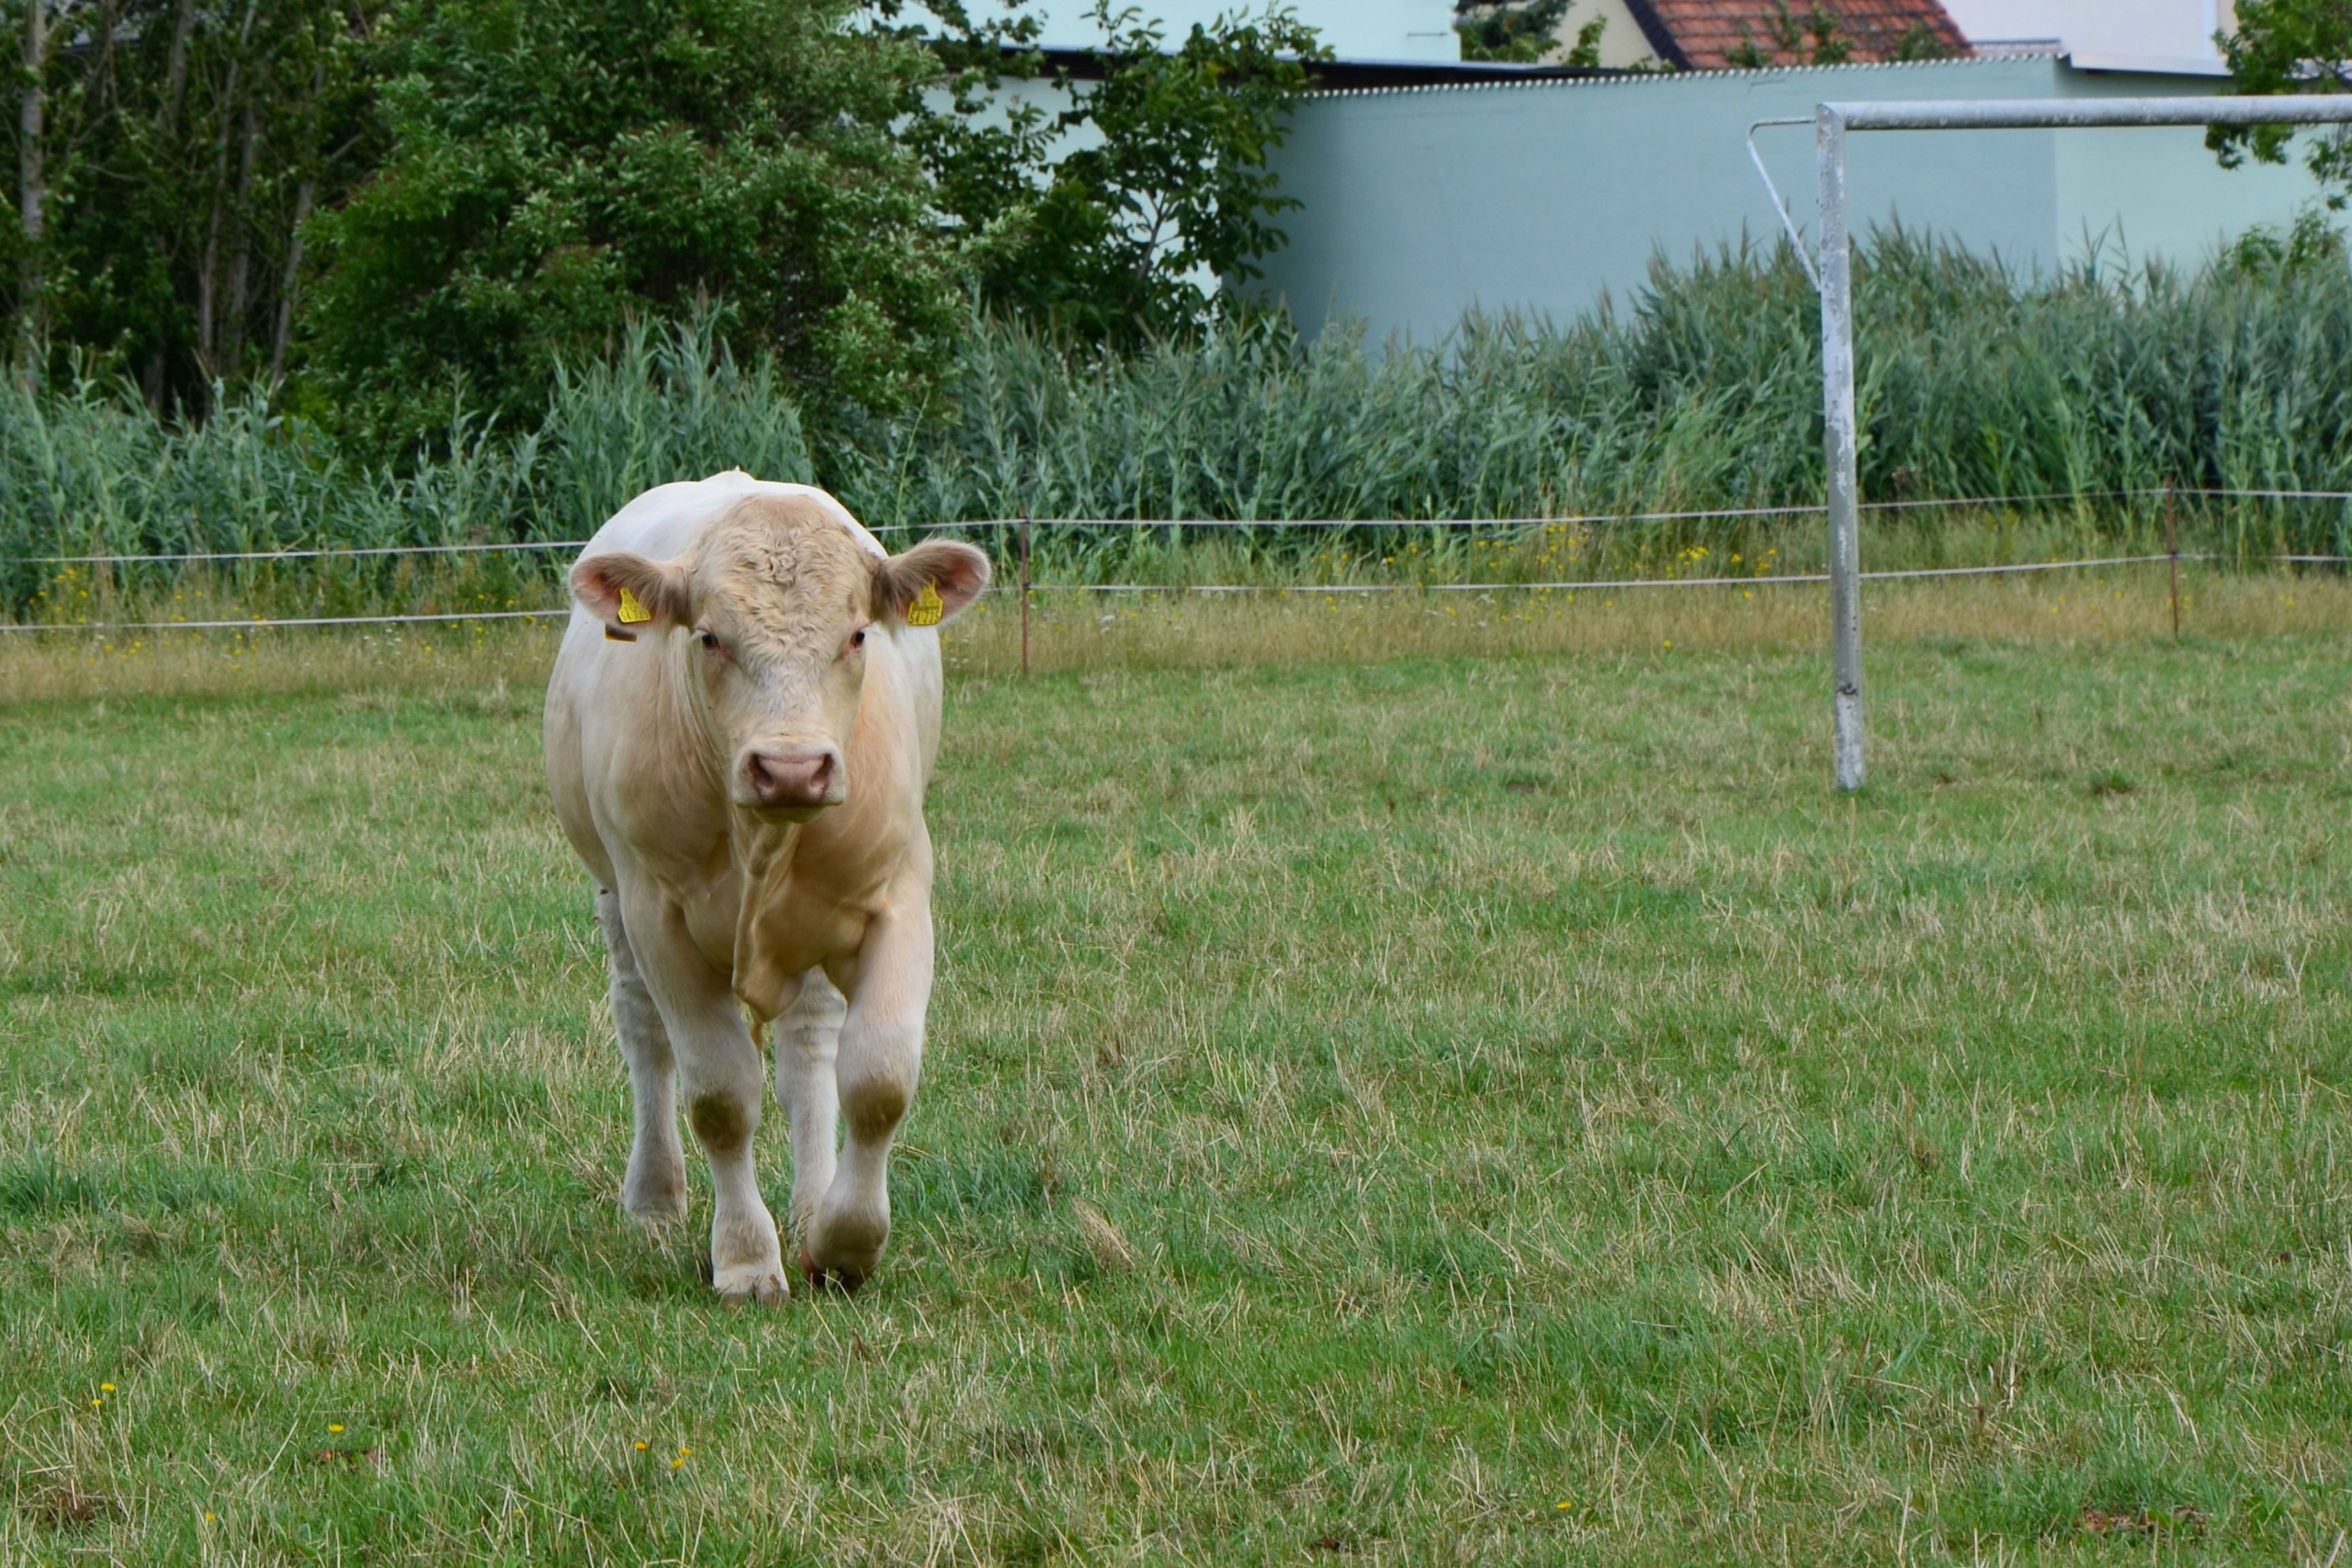 beige cow in grass field during daytime